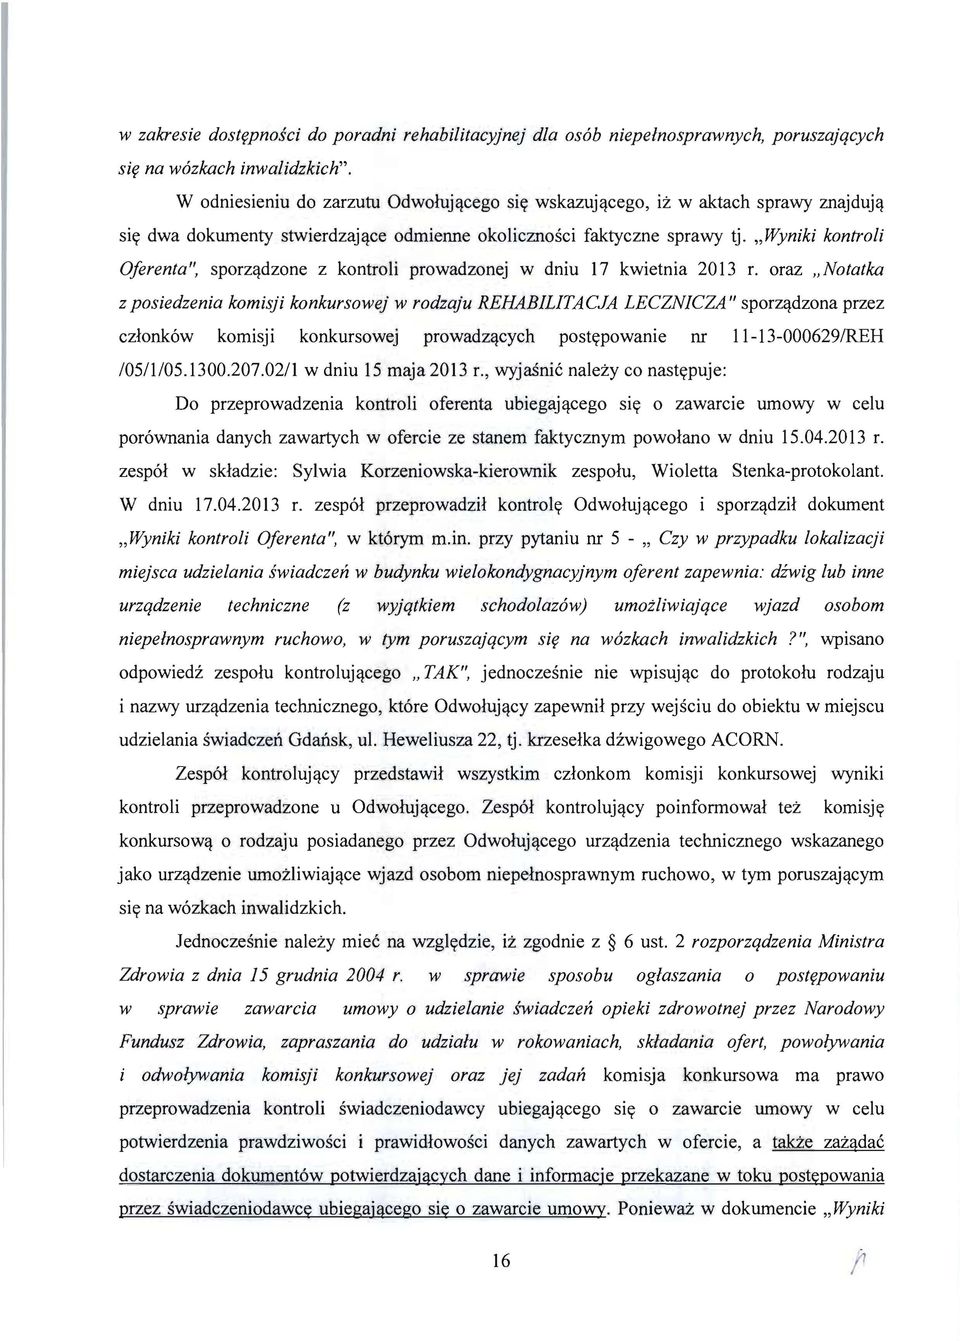 "Wyniki kontroli 0ferenta", sporz<ldzone z kontroli prowadzonej w dniu 17 kwietnia 2013 r.